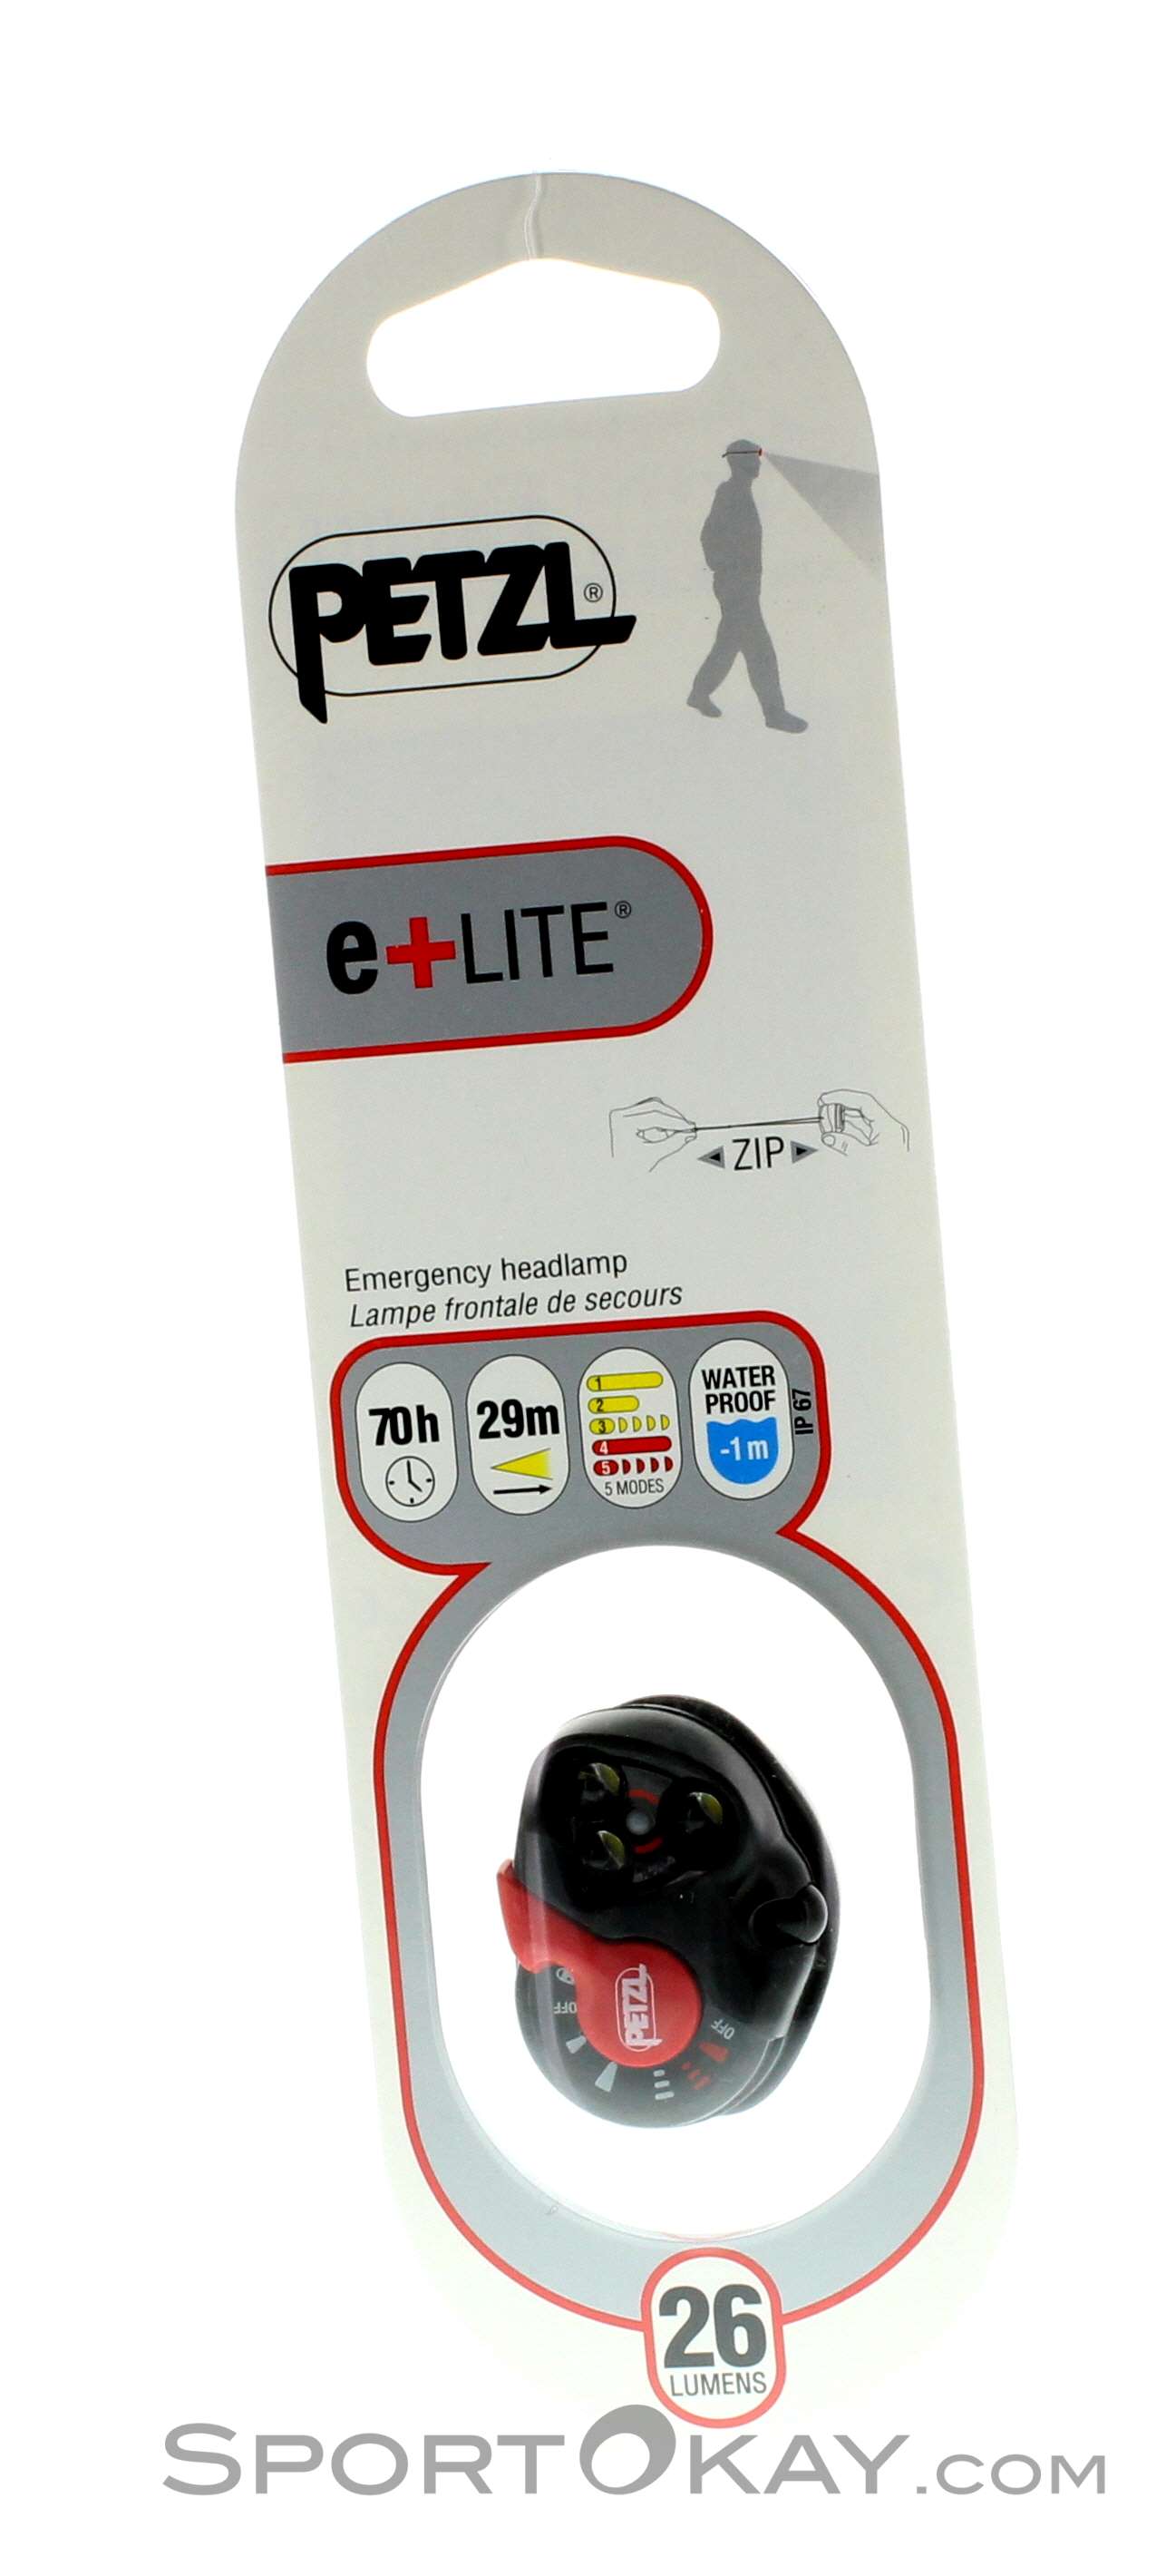 PETZL - LAMPE FRONTALE DE SECOURS ULTRA-COMPACTE PETZL e+LITE®